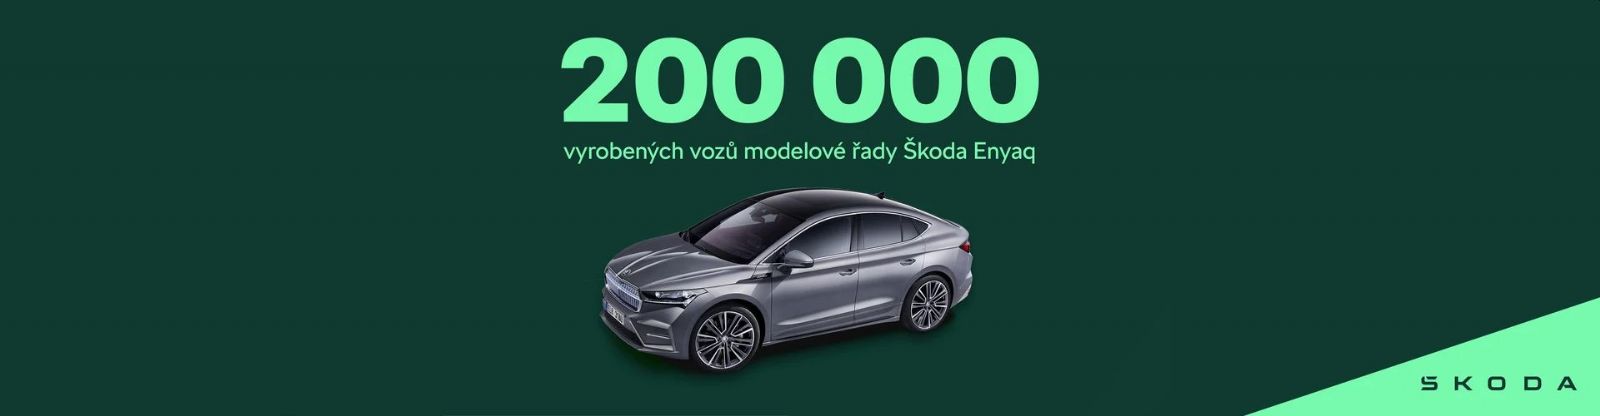 Modelová řada Škoda Enyaq překonala hranici 200 000 kusů. Nový model najdete v Plzni v autosalonu Auto CB